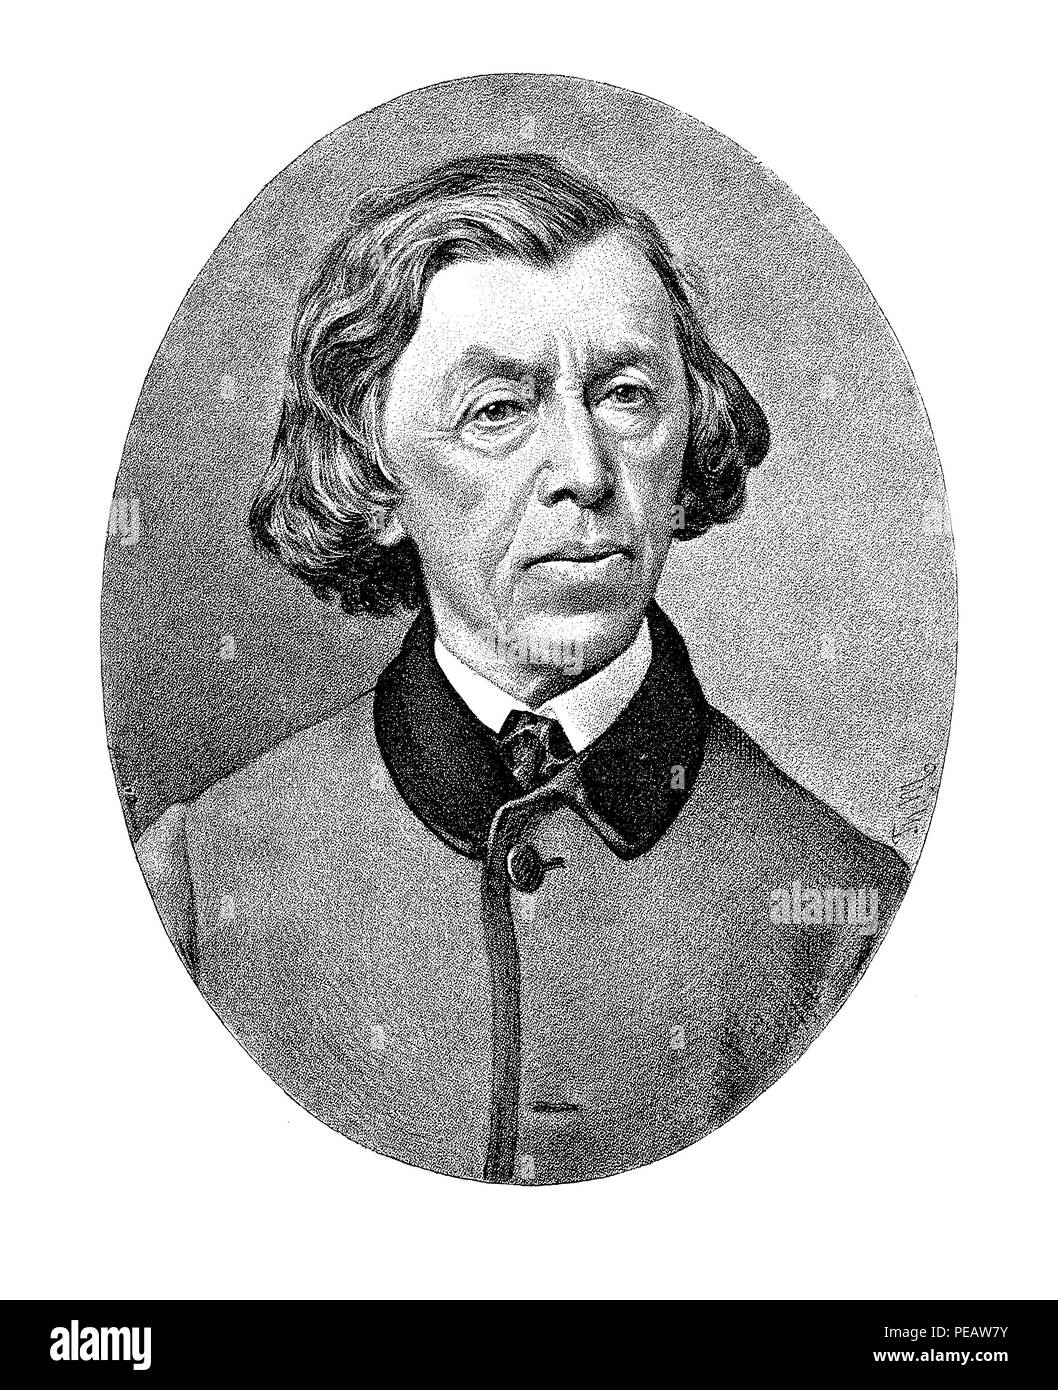 Gravure portrait de Melchior Paul Tobias Reinmann (1811-1881), portraitiste et peintre religieux Suisse Banque D'Images